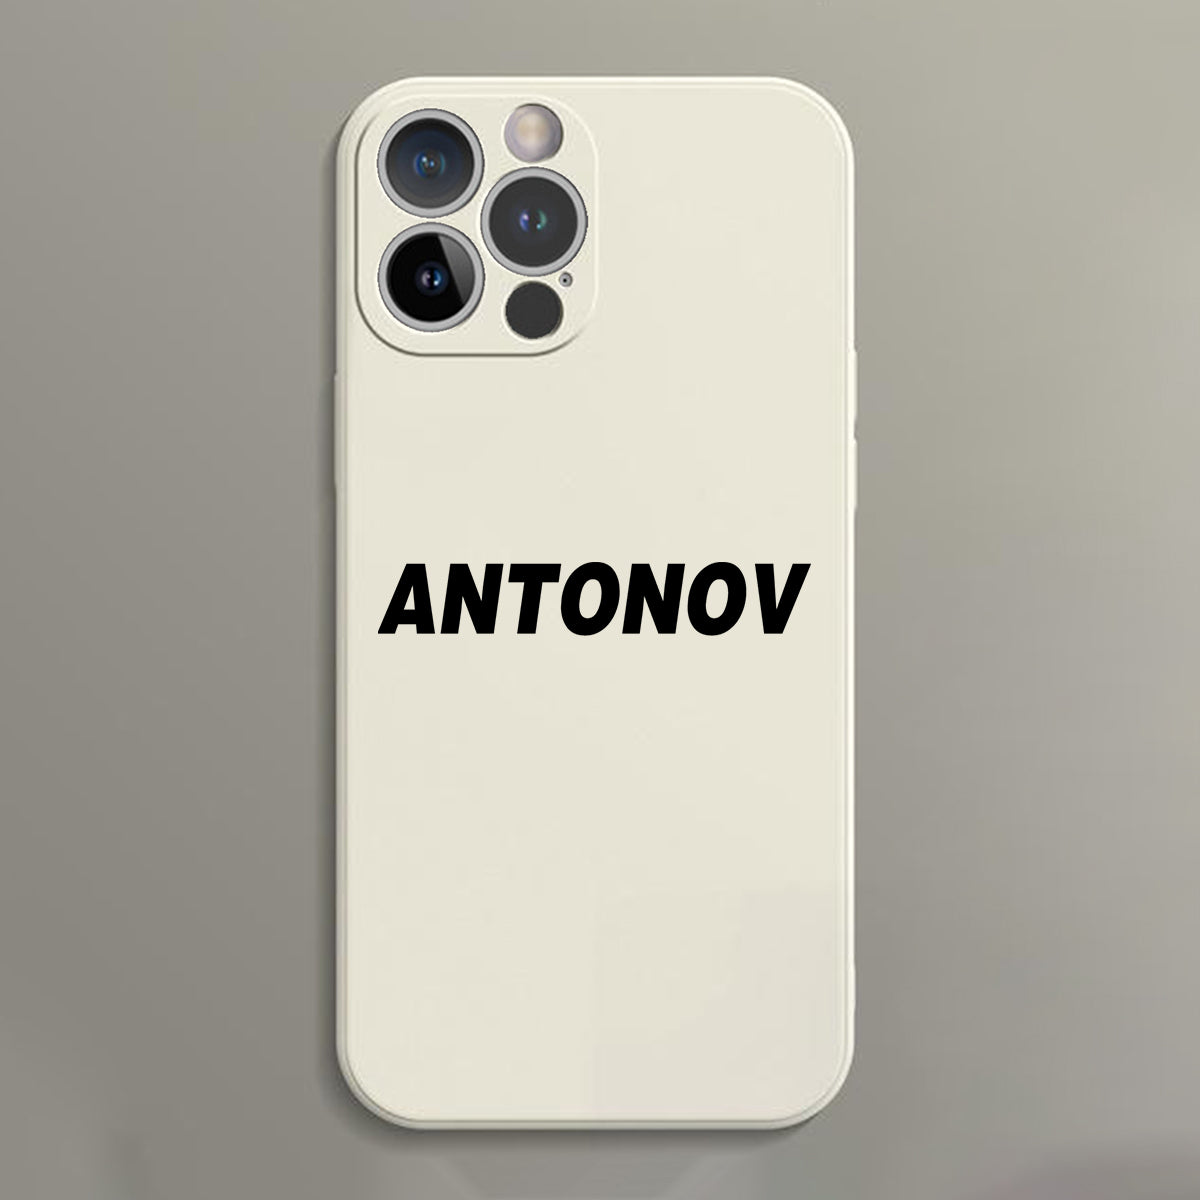 Antonov & Text Designed Soft Silicone iPhone Cases